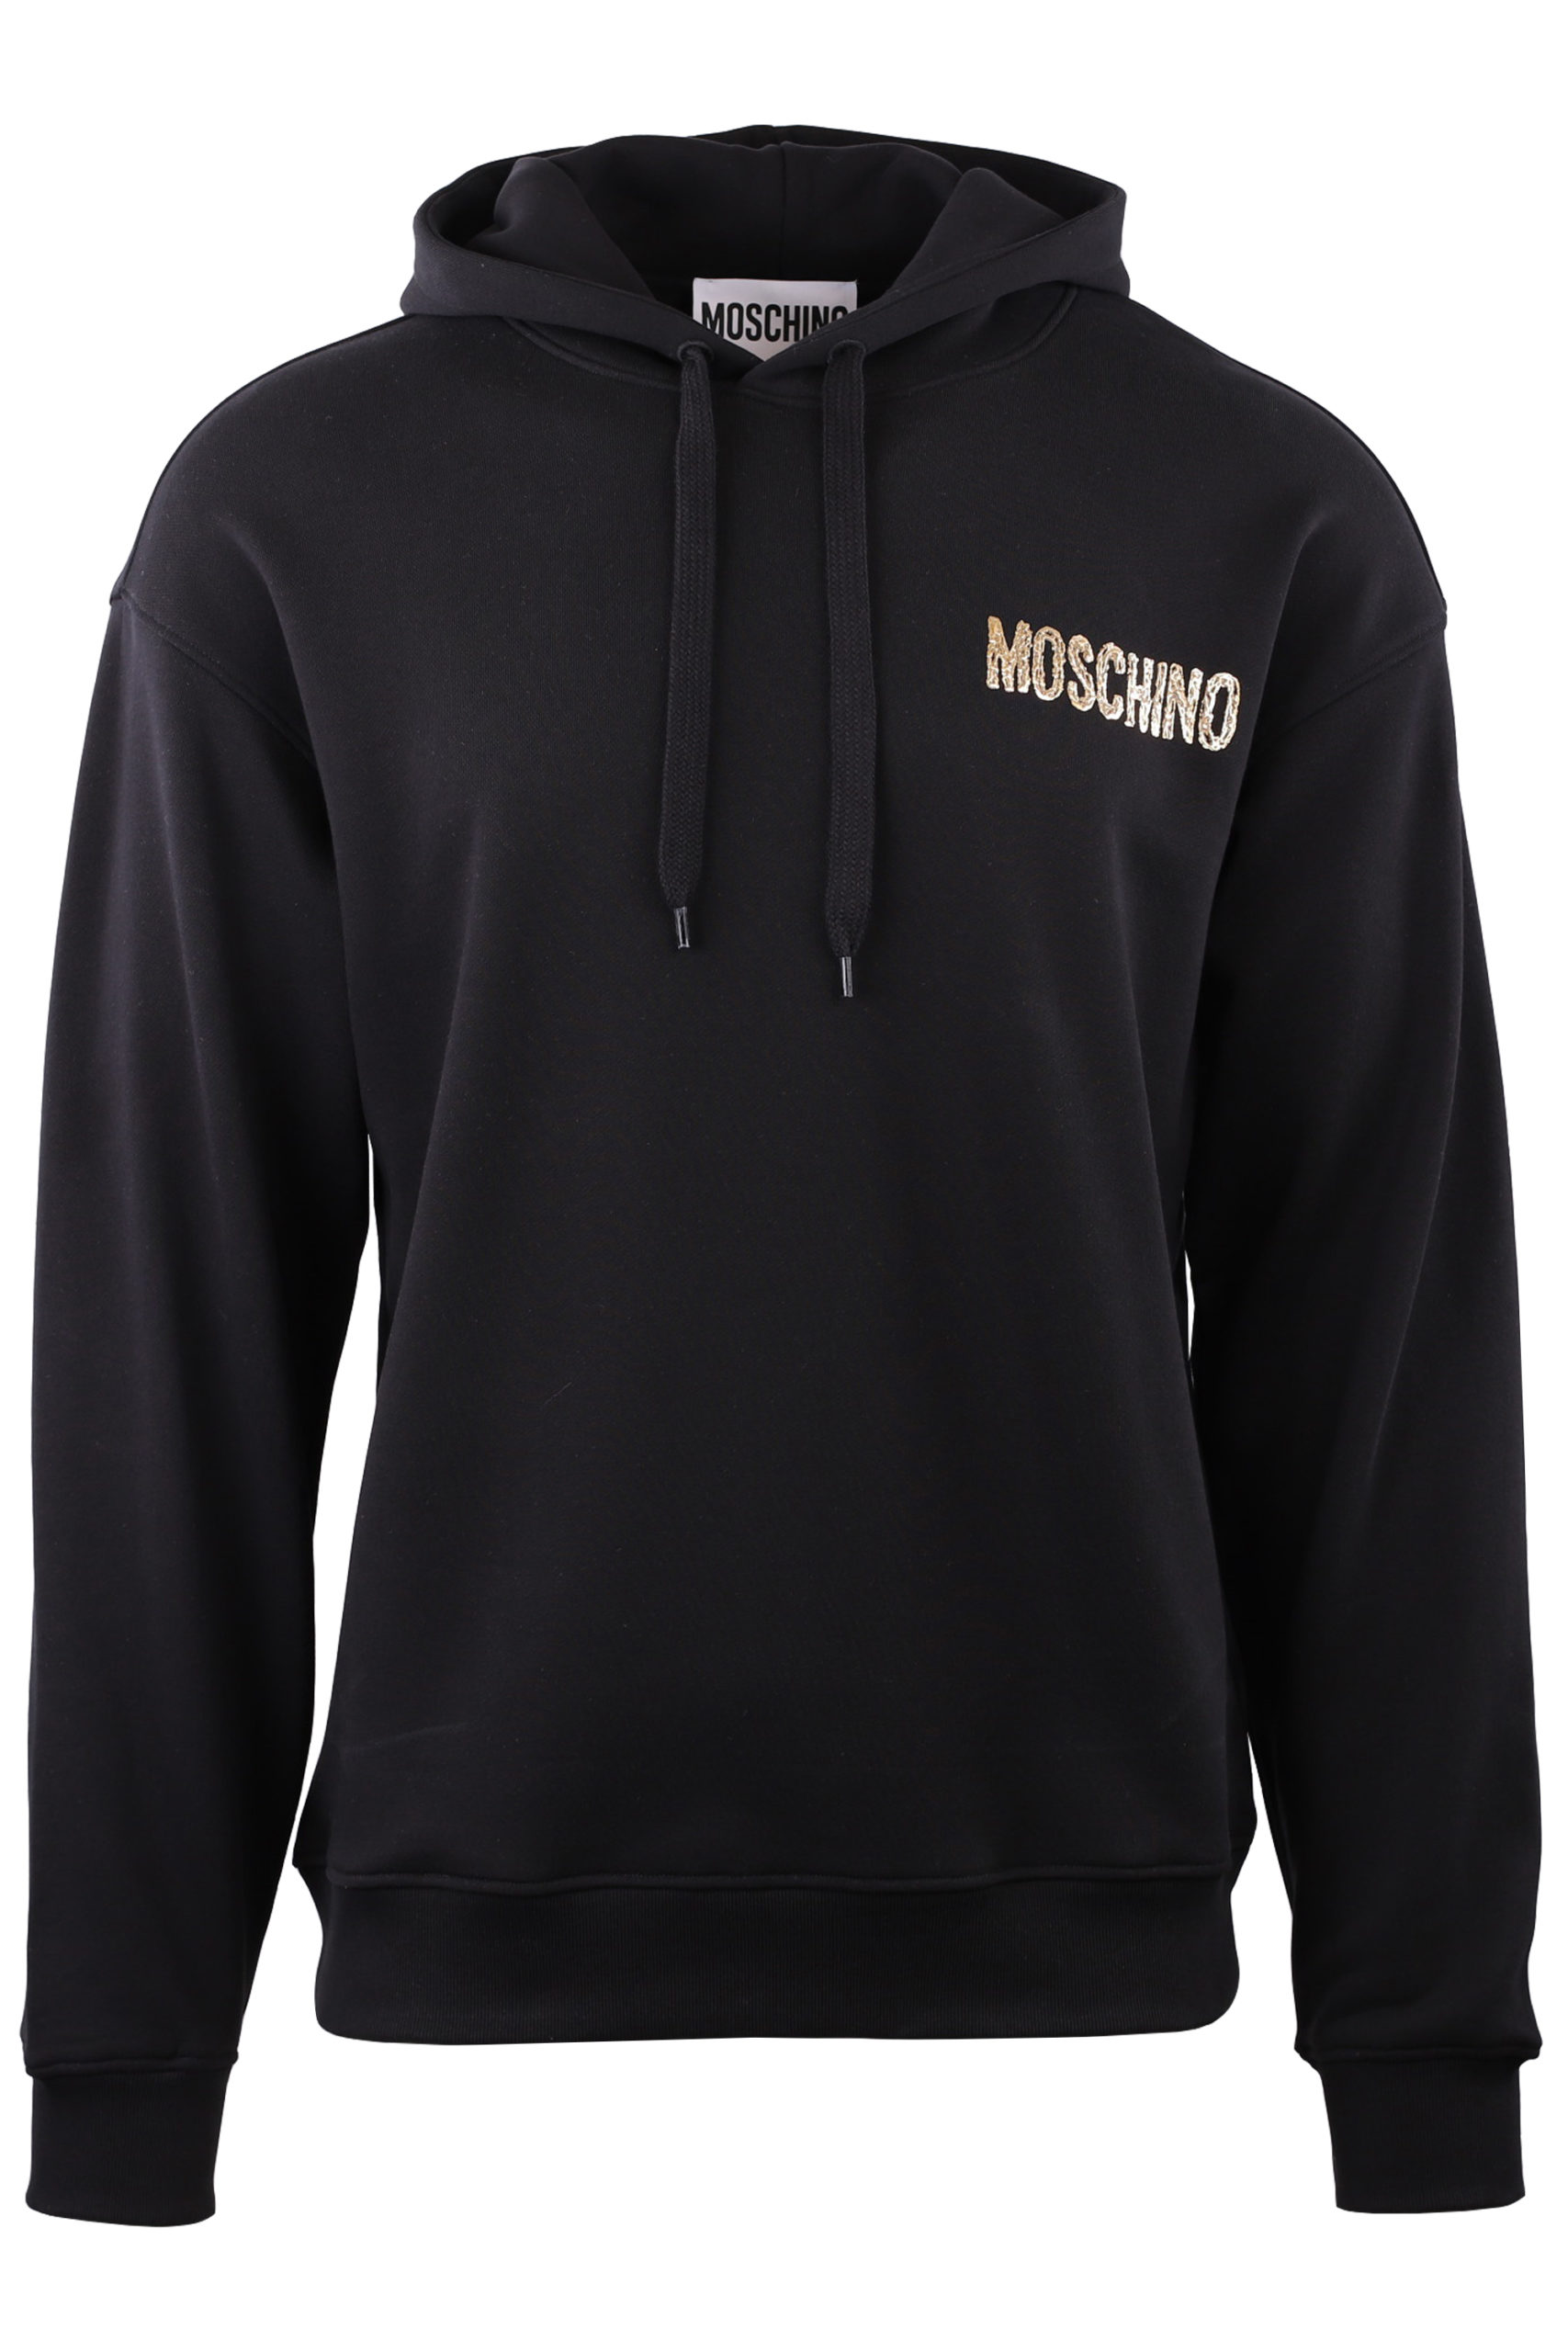 Moschino - Sudadera negra con capucha y logo en franja blanco - BLS Fashion